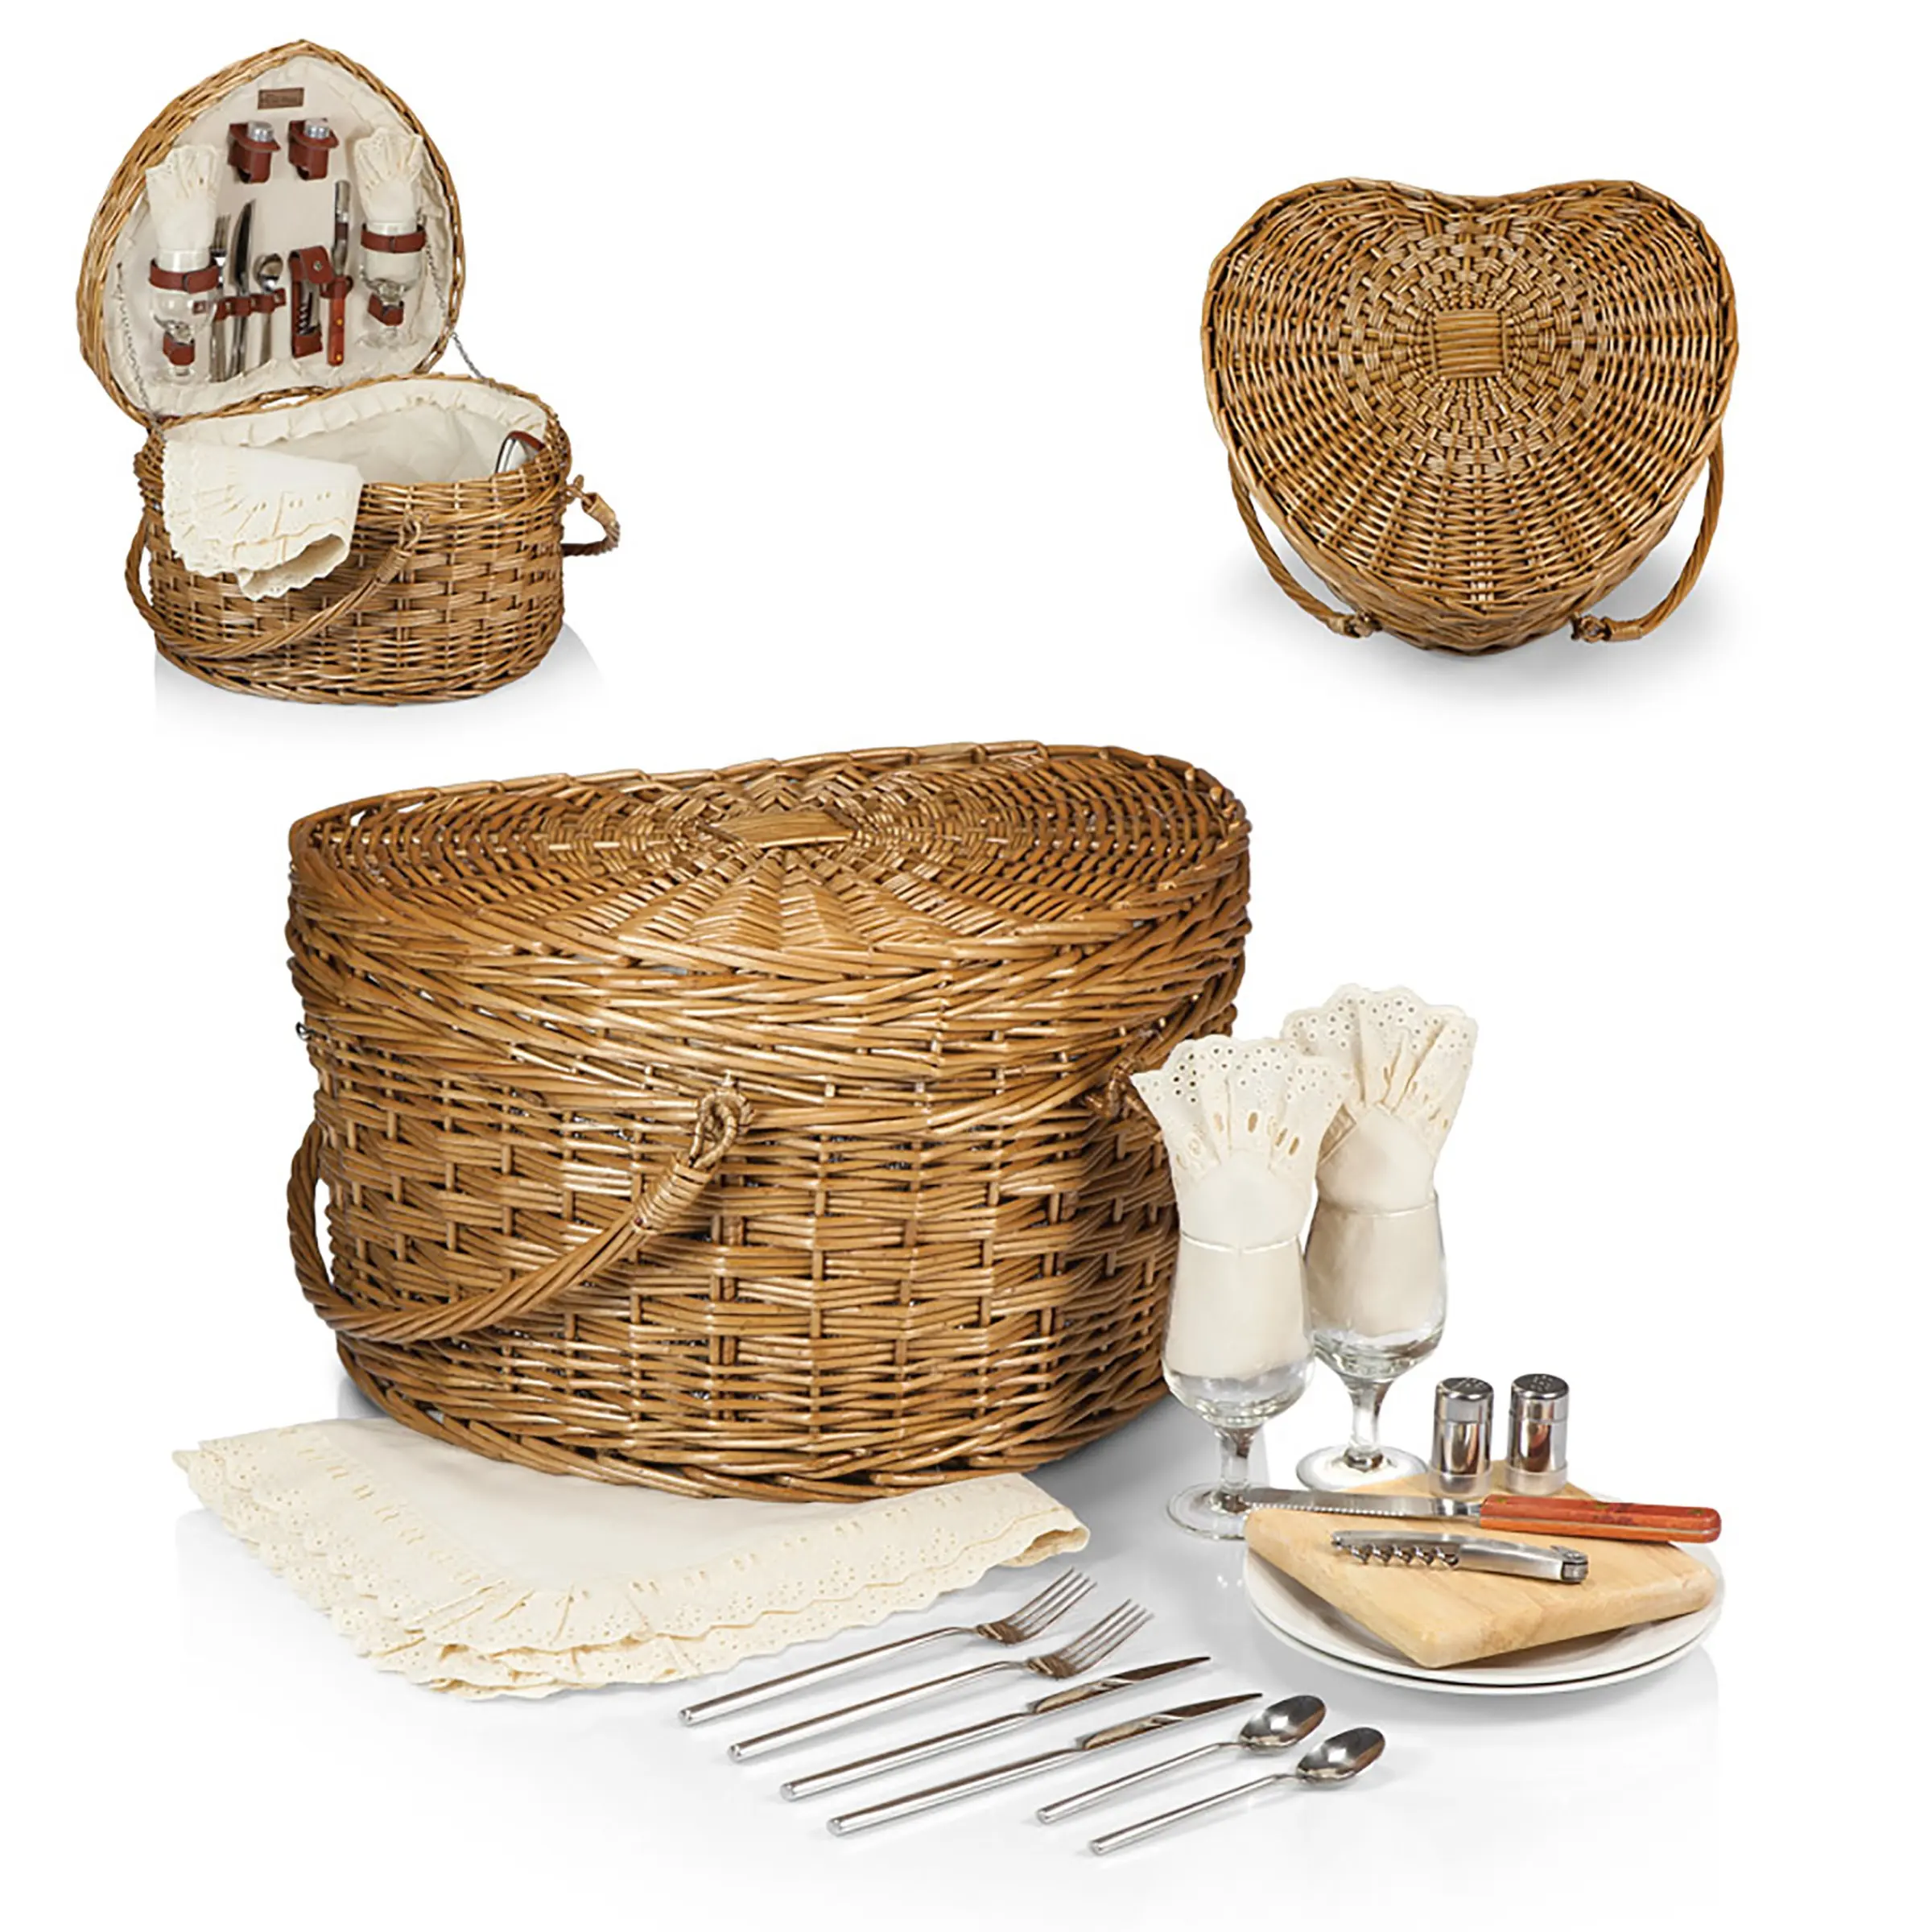 Neues Design Herzförmige hochwertige handgemachte natürliche Rattan Wicker Set Picknick korb